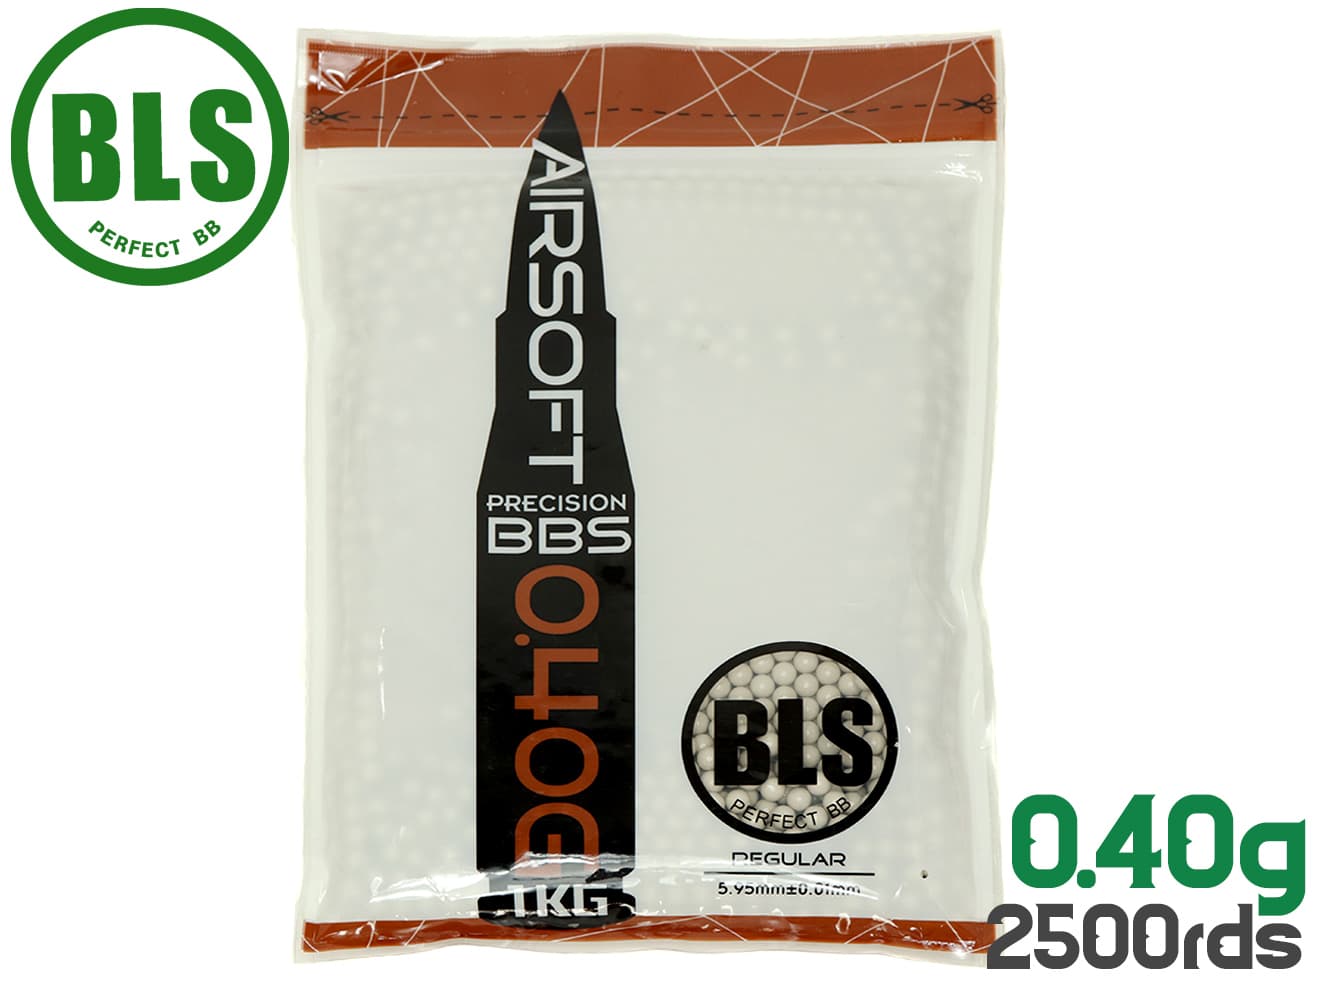 1KG-H40 BLS ビーエルエス商品説明ITEM INFO世界中で販売される高品質BBメーカーBLSが登場BLS Ultimate Heavy Precision 精密プラスティックBB弾 0.4g 2500発(1kg)です。世界中のエアソフトメーカーへOEM提供しているBB弾メーカー「BLS」製BB弾です。Precisionシリーズは精密度にこだわって製造されるプラスティックBB弾シリーズです。バイオでは無いので自宅やインドフィールド、シューティング競技用としてご使用ください。■What is BLS!?BLSはもともと宝石を研磨する会社として設立されました。その真球研磨技術を応用してエアソフトガン用BB弾の製造に着手！着実にシェアを伸ばし、毎月数百トンものBB弾を出荷しています。0.12〜0.5gまで幅広いラインナップを持ち、さまざまな国・メーカーにて使用されており、高品質で信頼のおけるBB弾メーカーです。商品基本情報・スペックITEM SPEC●商品名 ： BLS Ultimate Heavy Precision 精密プラスティックBB弾 0.4g 2500発(1kg)●商品番号 ： BLS-P-040I1KG●カラー ： アイボリー●対応 ： 6mmBB弾使用のエアソフトガン●サイズ ： 5.95±0.01●重量 ： 0.4g●入り数 ： 2500発注意事項ITEM NOTE∇商品固有の注意事項※バイオではありません。アウトドアフィールドでは使用できませんのでご注意ください。∇ご購入時の留意事項商品はすべて点検してからのお届けになります。商品によってはパッケージの開封等を行う場合もございますことをご了承ください。※商品には万全を記しておりますが、万一不備な点がございましたら、お手数ですがお問い合わせフォームにてご連絡頂ますようお願い致します。なお、海外製品につきましては、輸入時についた若干の傷、痛み等が見られる場合がございます。 国内製品のような完全品をお求めの方はご遠慮下さい。※商品が適合外であった場合、またはお客様都合による交換・返品・返金は出来ません。よくお確かめの上、ご購入下さい。※モニター環境により、実際の商品の色と若干異なる場合がございますのでご了承下さい。※他サイトでも同時販売の為売り切れの際はご了承下さい。※売り切れの際は早急にご連絡させて頂きます。（当社休業日を除く）関連商品RELATED ITEMBLS Ultimate Heavy Precision 精密プラスティックBB弾 0.40g 1000発(400g)[BLS-P-040I1BA]BLS Precision 精密プラスティックBB弾 0.12g 8333発(1kg)[BLS-P-012W1KG]BLS Precision 精密プラスティックBB弾 0.2g 5000発(1Kg)[BLS-P-020W1KG]BLS Precision 精密プラスティックBB弾 0.23g 4348発(1kg)[BLS-P-023W1KG]BLS Precision 精密プラスティックBB弾 0.25g 4000発(1kg)[BLS-P-025W1KG]BLS Precision 精密プラスティックBB弾 0.28g 3571発(1kg)[BLS-P-028W1KG]BLS Precision 精密プラスティックBB弾 0.30g 3333発(1kg)[BLS-P-030W1KG]BLS Precision 精密プラスティックBB弾 0.32g 3125発(1kg)[BLS-P-032W1KG]BLS Ultimate Heavy Precision 精密プラスティックBB弾 0.36g 2778発(1kg)[BLS-P-036I1KG]BLS Ultimate Heavy Precision 精密プラスティックBB弾 0.43g 2326発(1kg)[BLS-P-043I1KG]BLS Ultimate Heavy Precision 精密プラスティックBB弾 0.45g 2222発(1kg)[BLS-P-045I1KG]BLS Ultimate Heavy Precision 精密プラスティックBB弾 0.48g 2083発(1kg)[BLS-P-048I1KG]【検索キーワード】：BLS LIEN SHENG PLASTIC INDUSTRY CO., Ltd BB弾 ビービー弾 エアソフトガン 電動ガン ガスガン トイガン エアガン AEG GBB ガスブローバック ボルトアクション エアコキ サバゲー サバイバルゲーム インドア CQC CQB APS IPSC 精密射撃 競技 ビーエルエス 重量弾 アルティメットヘビー